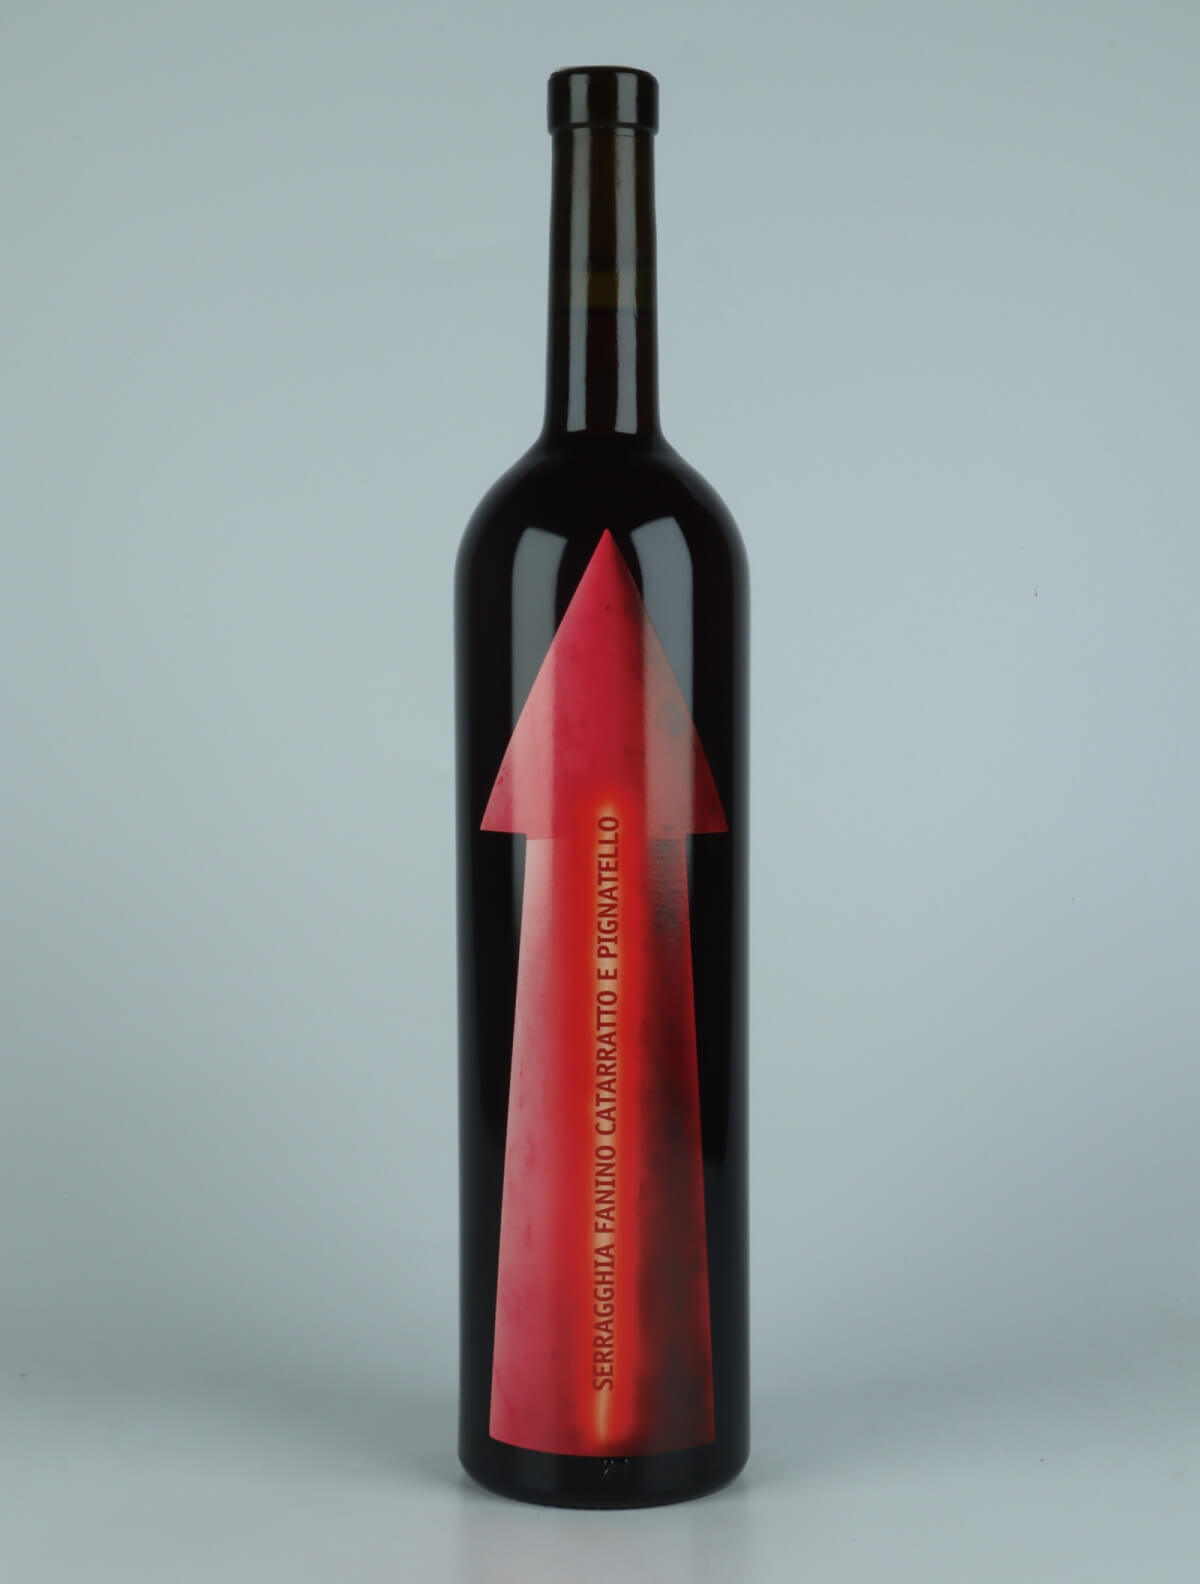 A bottle 2022 Serragghia Fanino Red wine from Gabrio Bini, Sicily in Italy